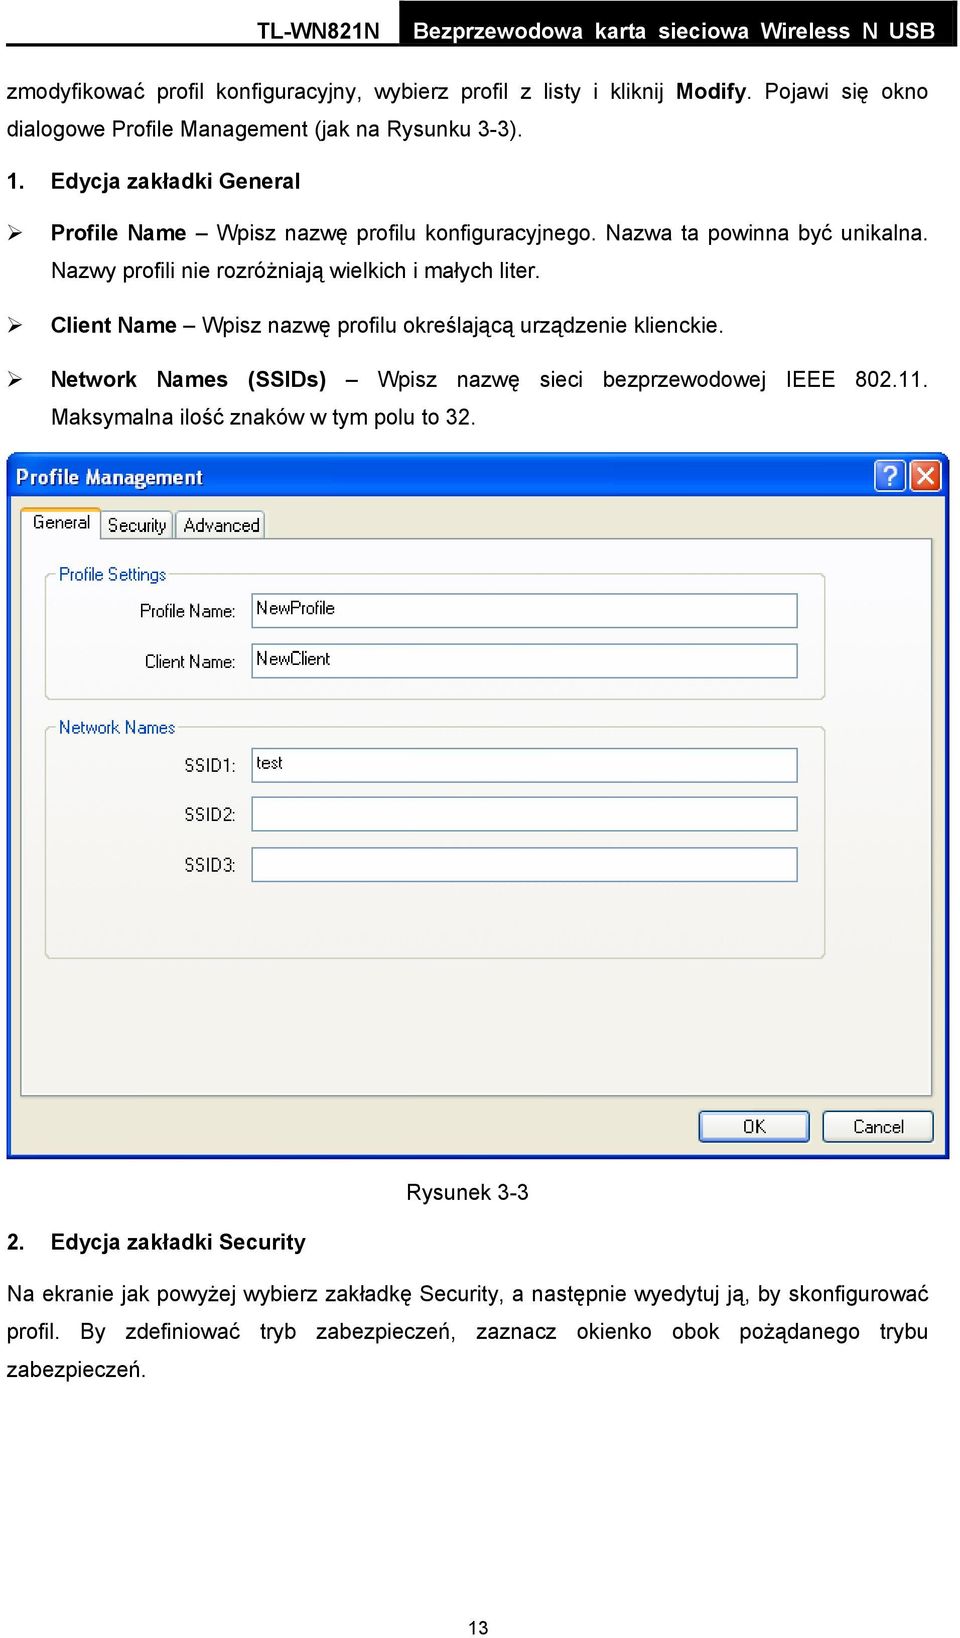 Client Name Wpisz nazwę profilu określającą urządzenie klienckie. Network Names (SSIDs) Wpisz nazwę sieci bezprzewodowej IEEE 802.11. Maksymalna ilość znaków w tym polu to 32.